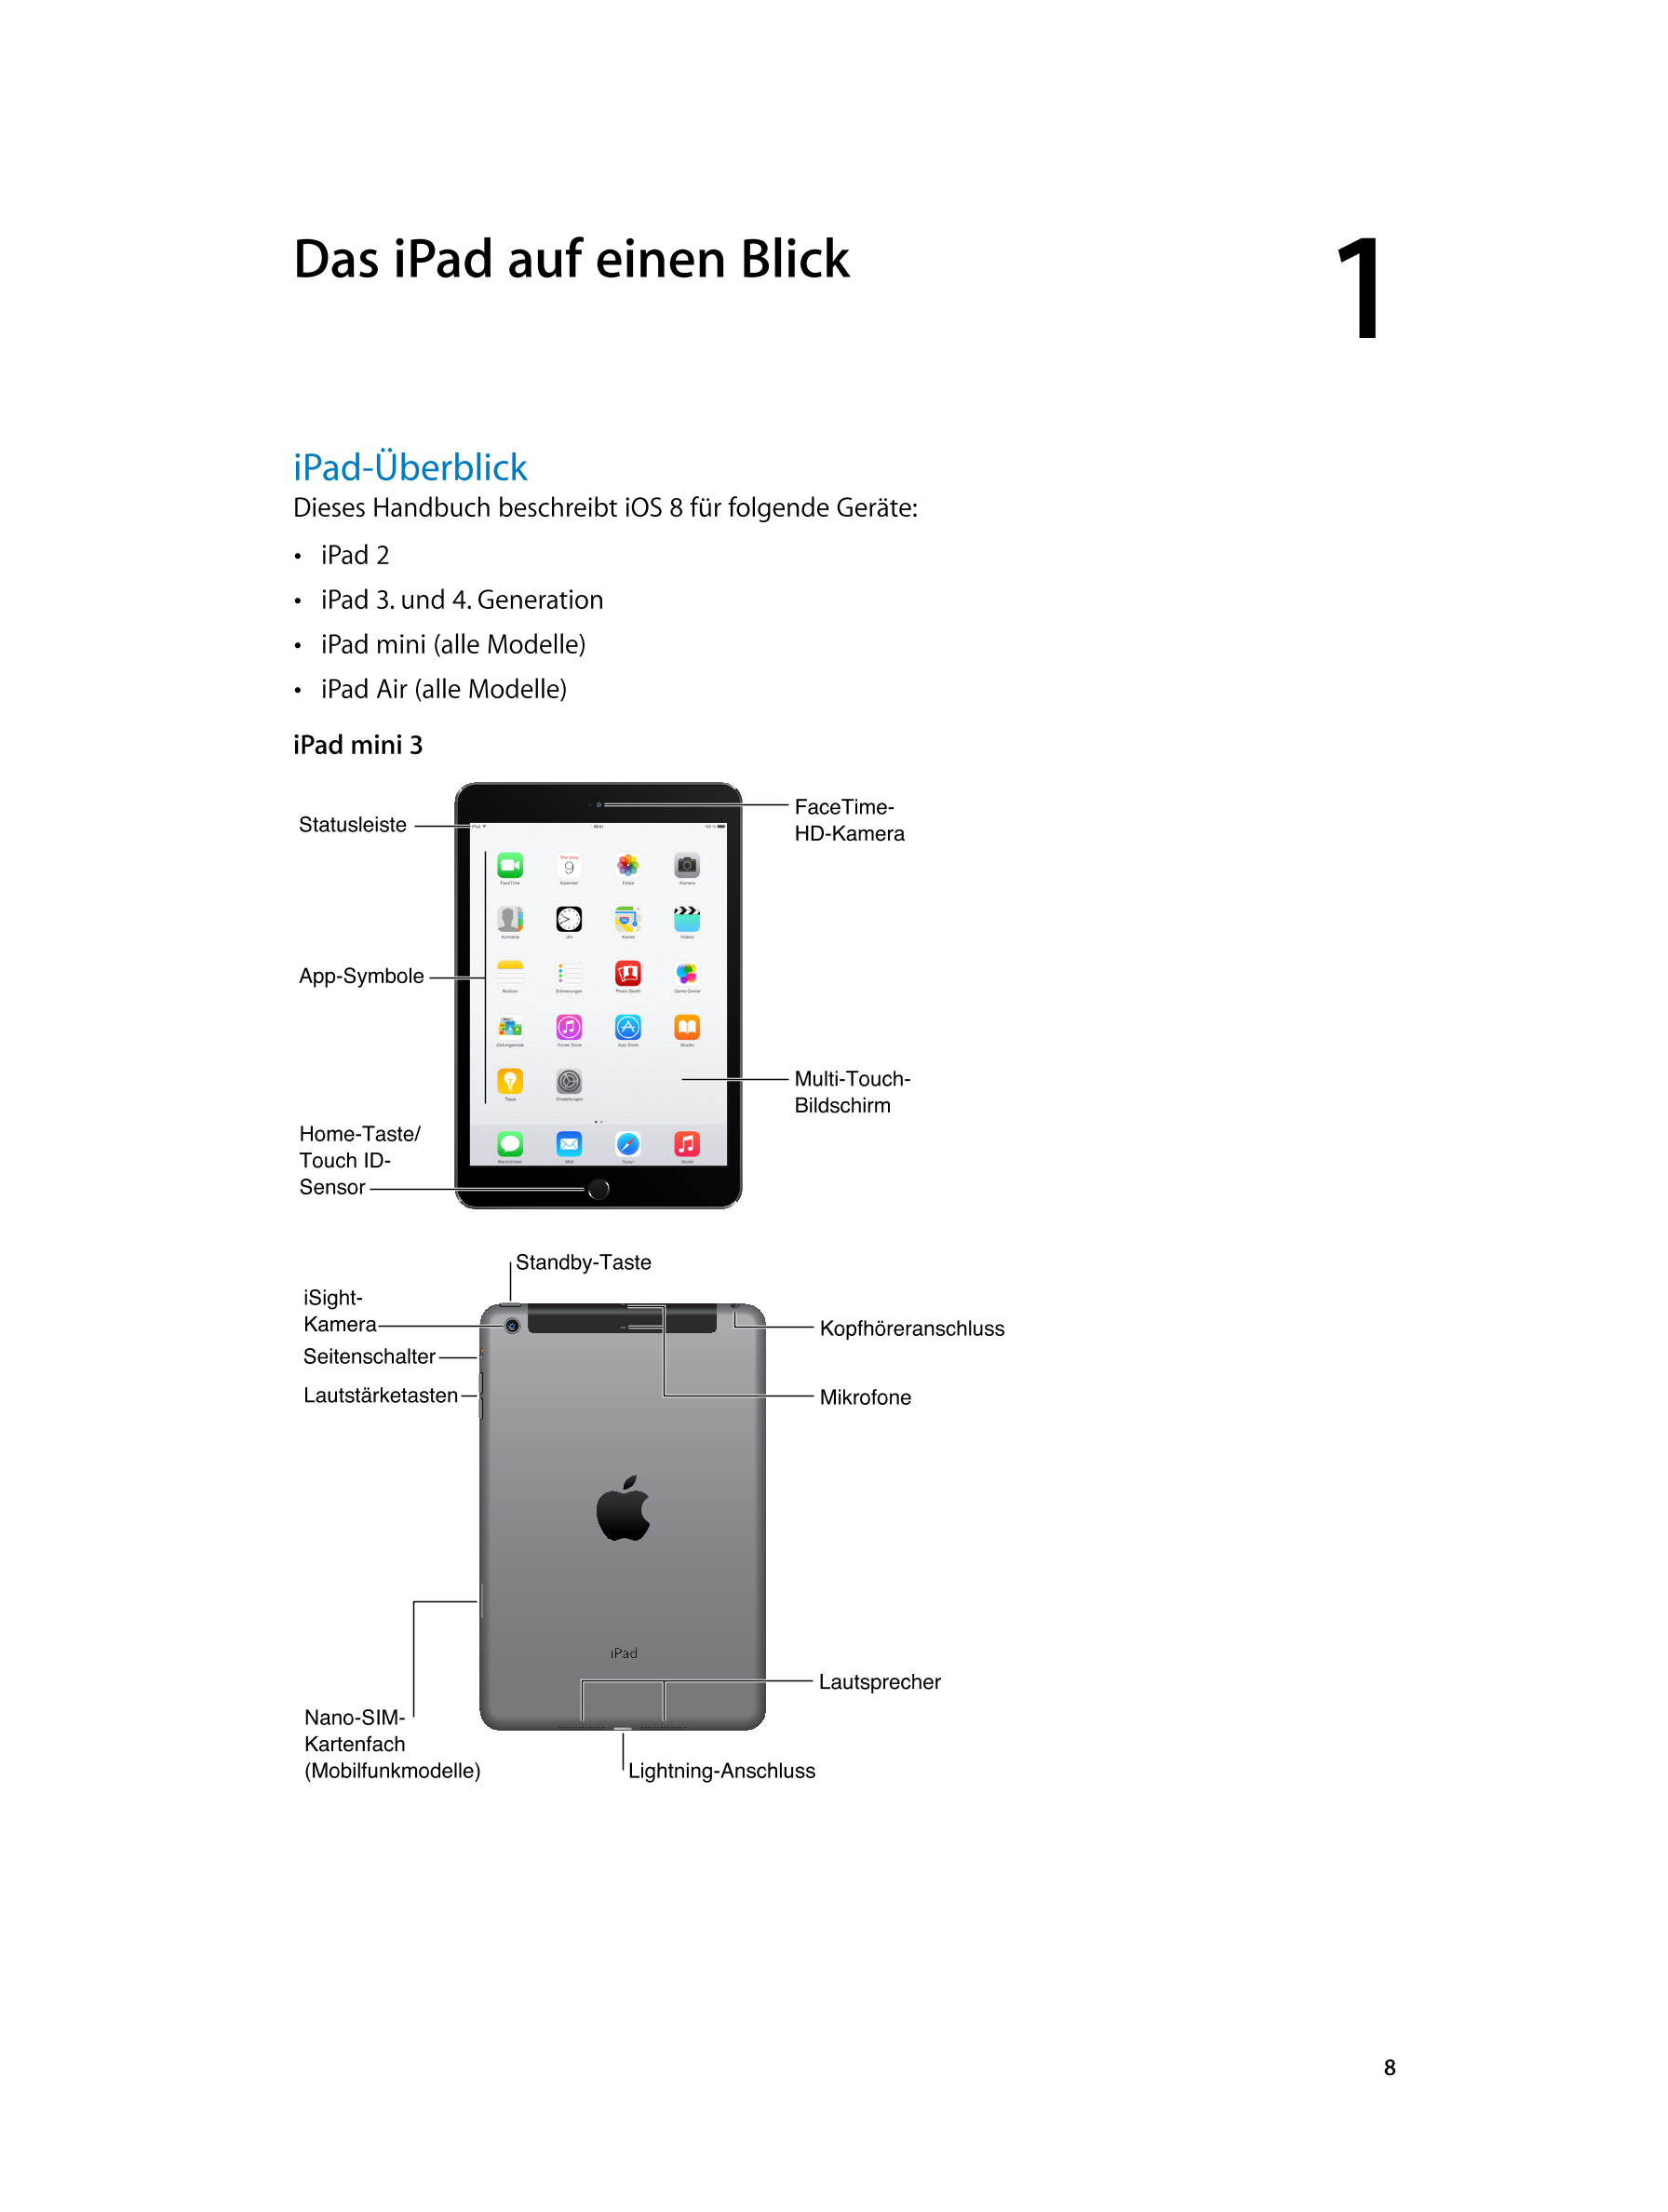   Das iPad auf einen Blick 1         
iPad-Überblick
Dieses Handbuch beschreibt iOS  8 für folgende Geräte: 
•  iPad 2
•  iPad 3